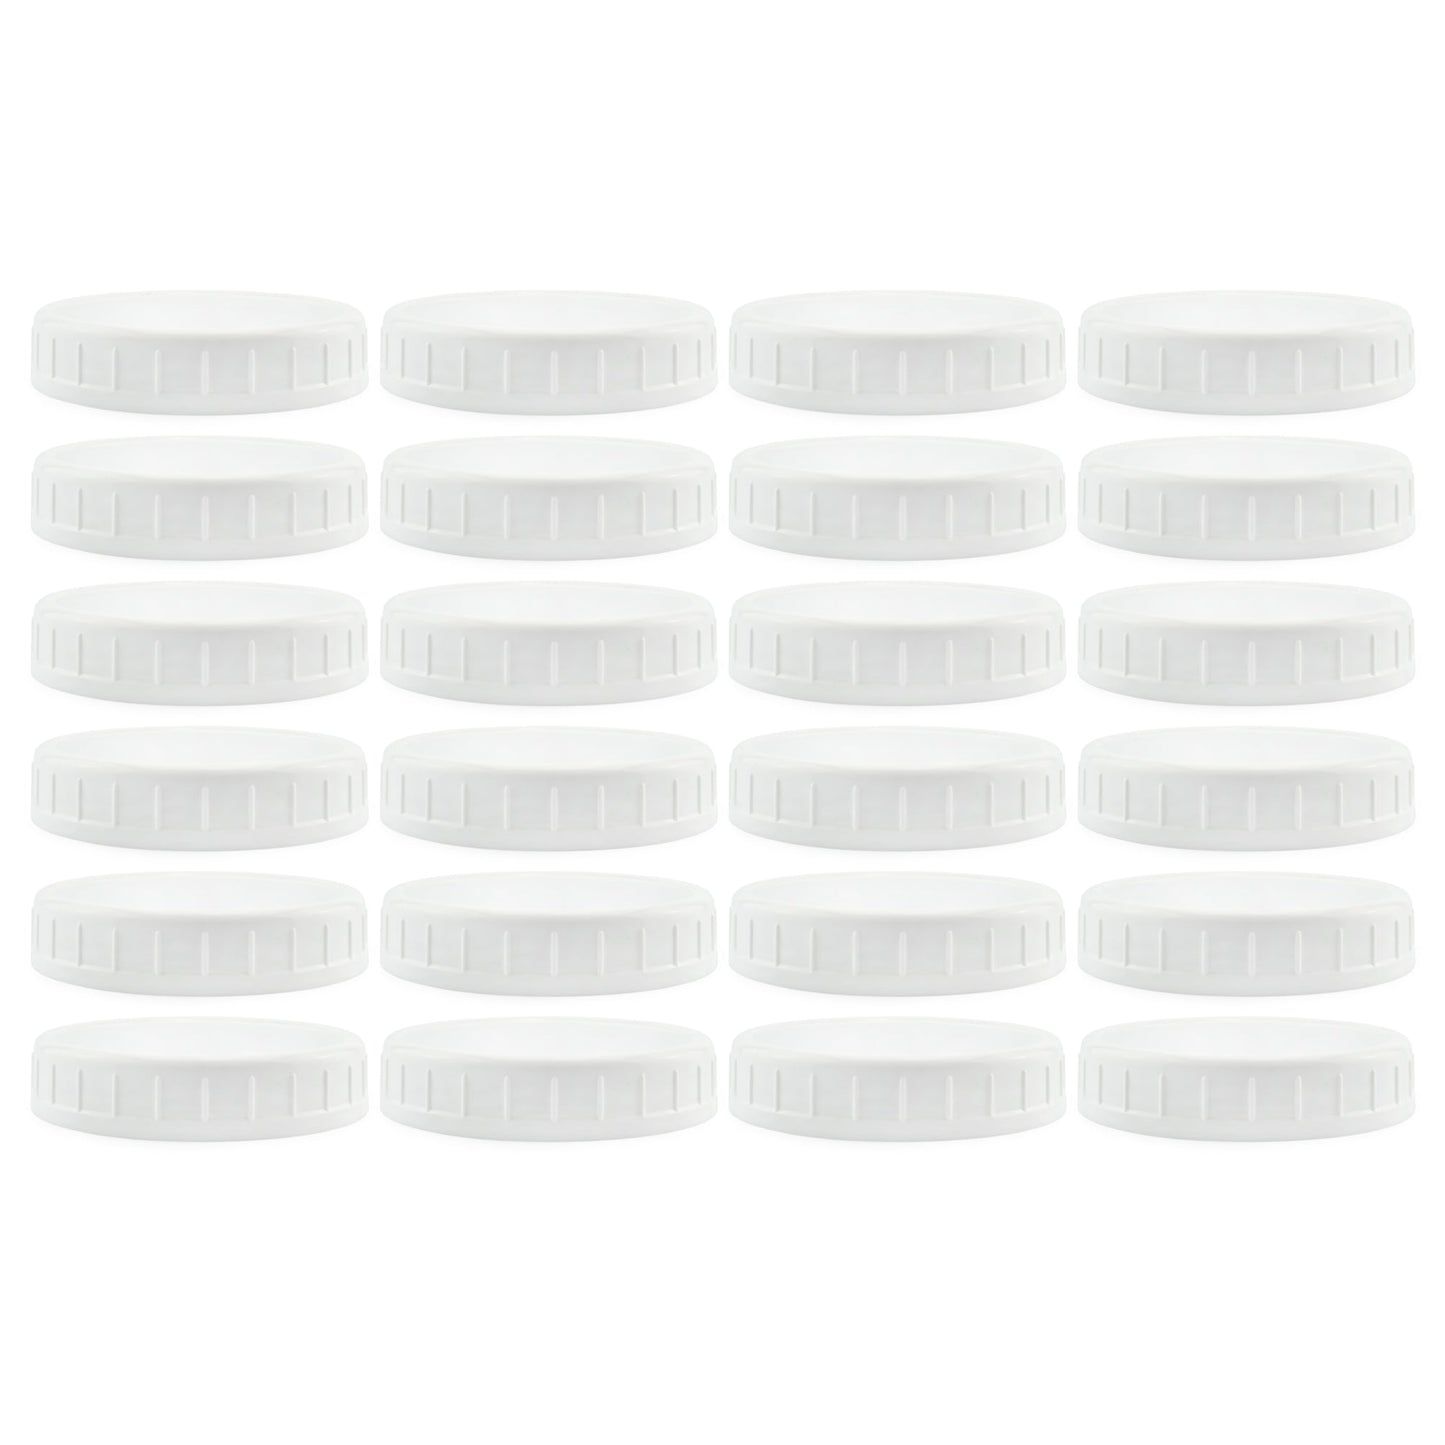 Wide Mouth Plastic Mason Jar Lids (Case of 720) - SH_1184_CASE